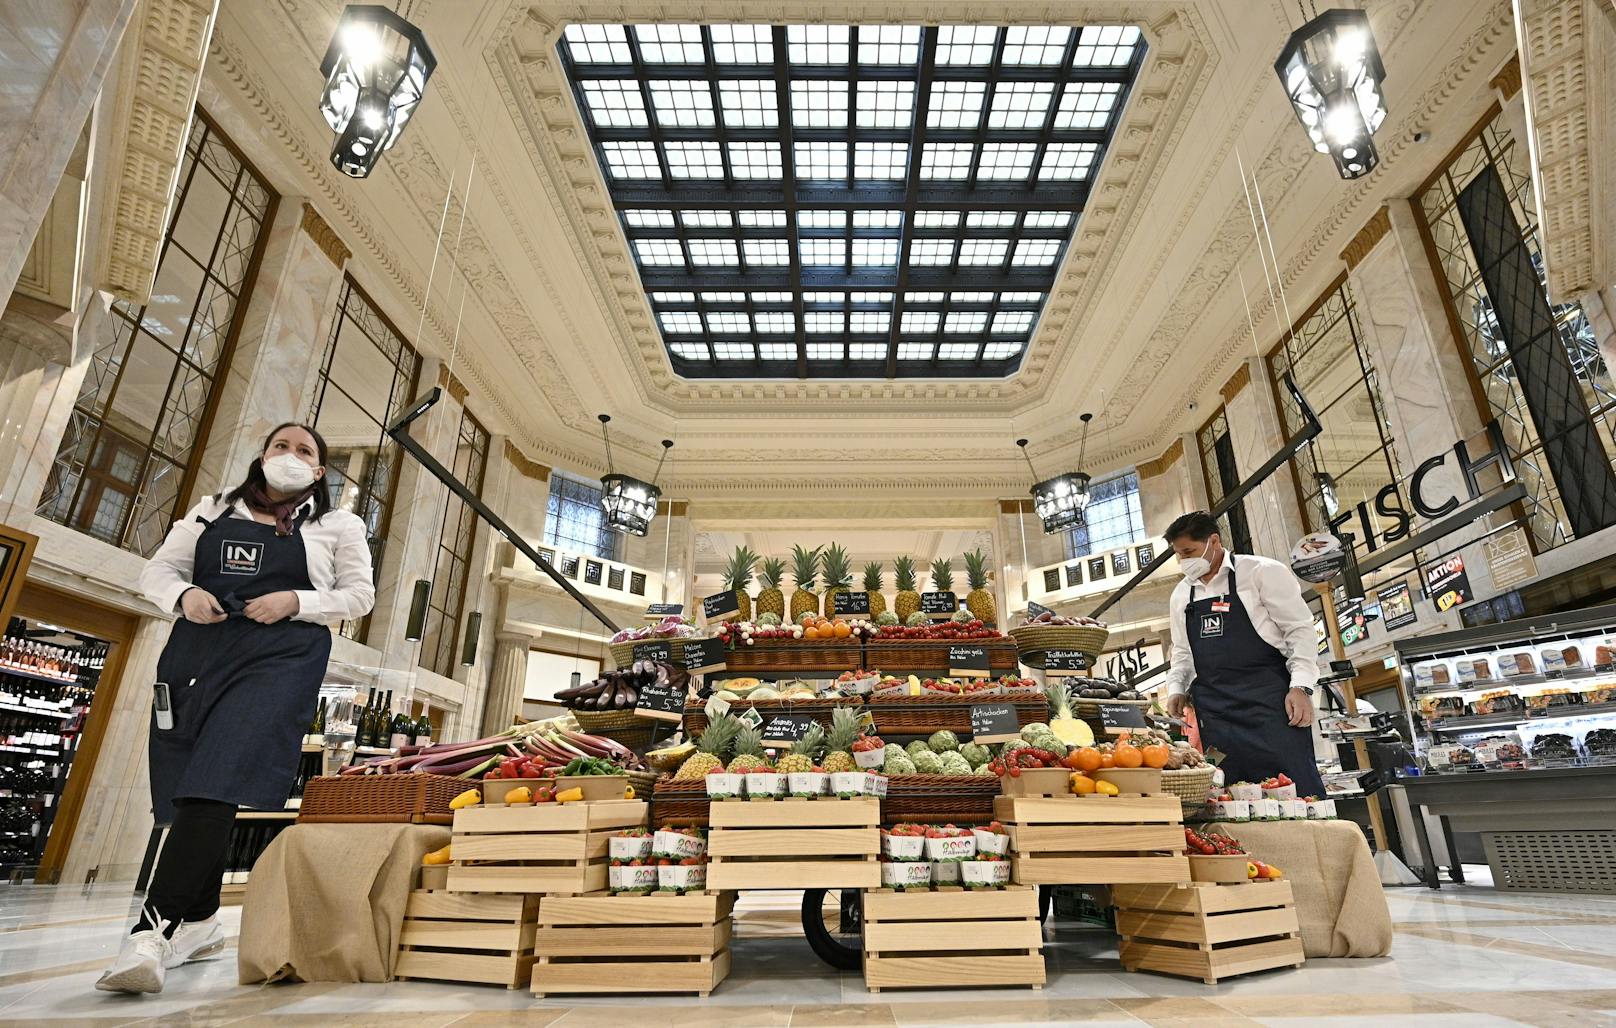 Nicht nur der Standort ist exklusiv, auf 1.770 Quadratmetern bietet der Supermarkt auch ein riesiges Zusatzsortiment an.